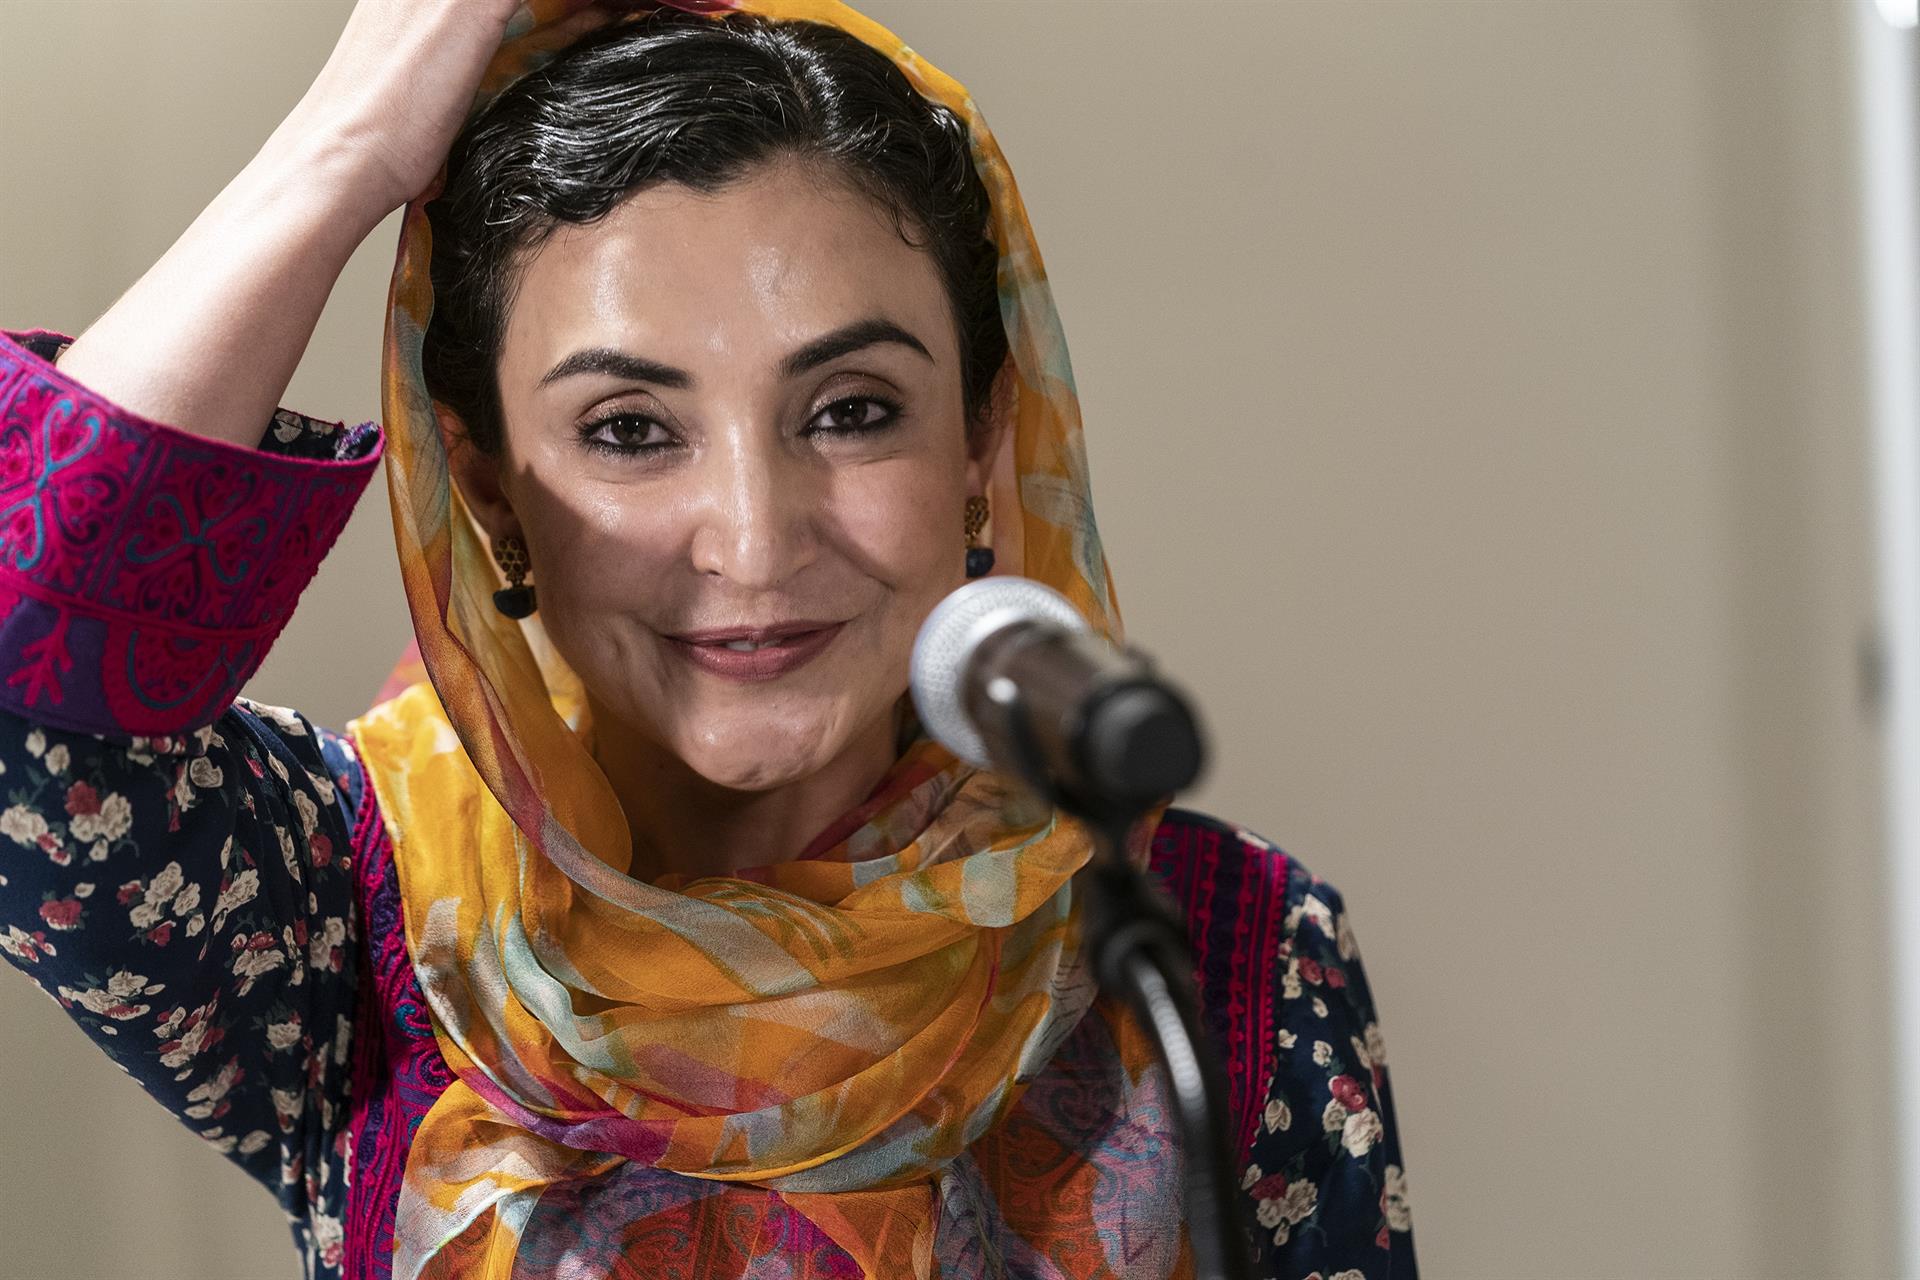 La embajadora de Afganistán en EEUU, en el limbo tras la conquista talibán, dimite